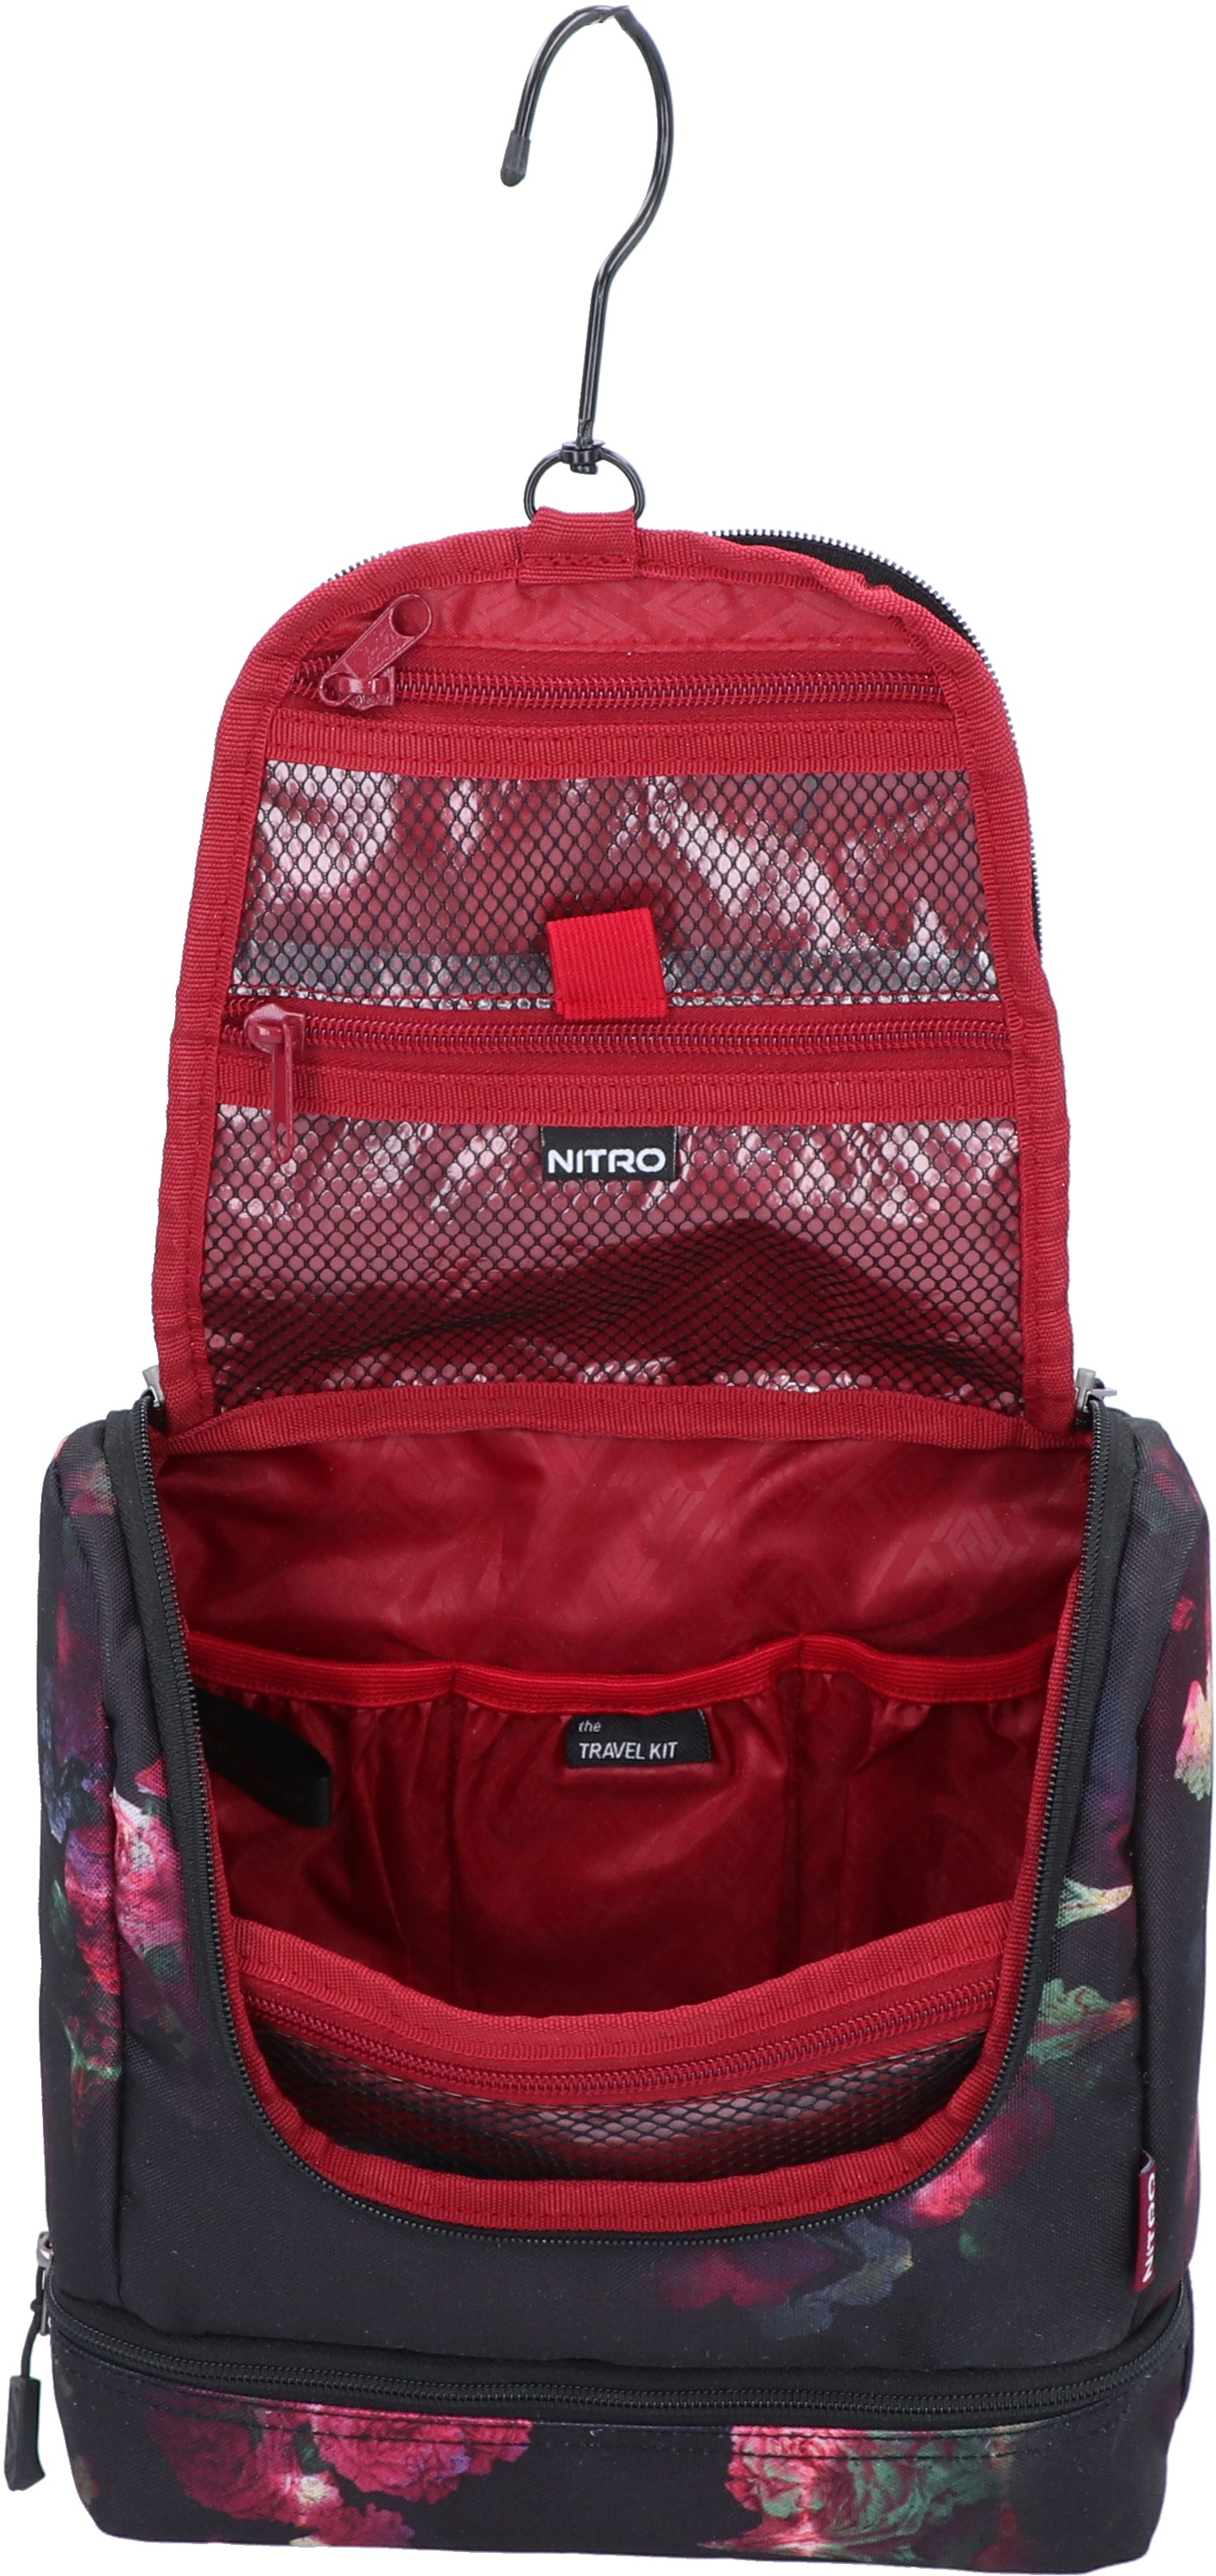 Nitro Waschbeutel Travel Kit Black Rose Bag Tasche Snowboard